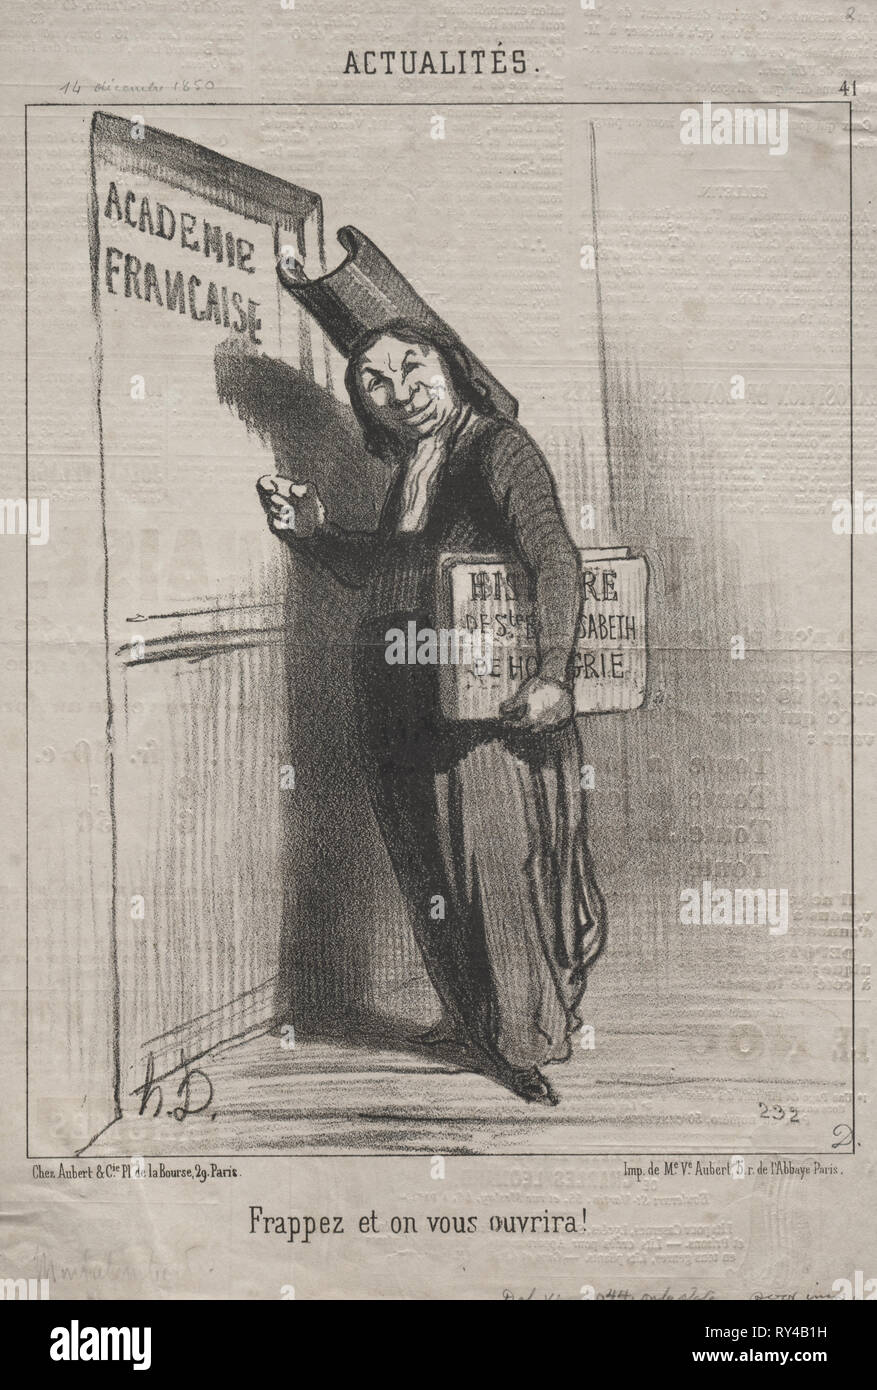 Publié dans Le Charivari (28 décembre 1850) : Actualités (No. 41) : frapper et il s'ouvrira pour vous !, 1850. Honoré Daumier (Français, 1808-1879). Fiche technique : Lithographie ; 31,6 x 21,4 cm (12 7/16 x 8 7/16 in.) ; image : 25,3 x 19,9 cm (9 15/16 x 7 13/16 in Banque D'Images